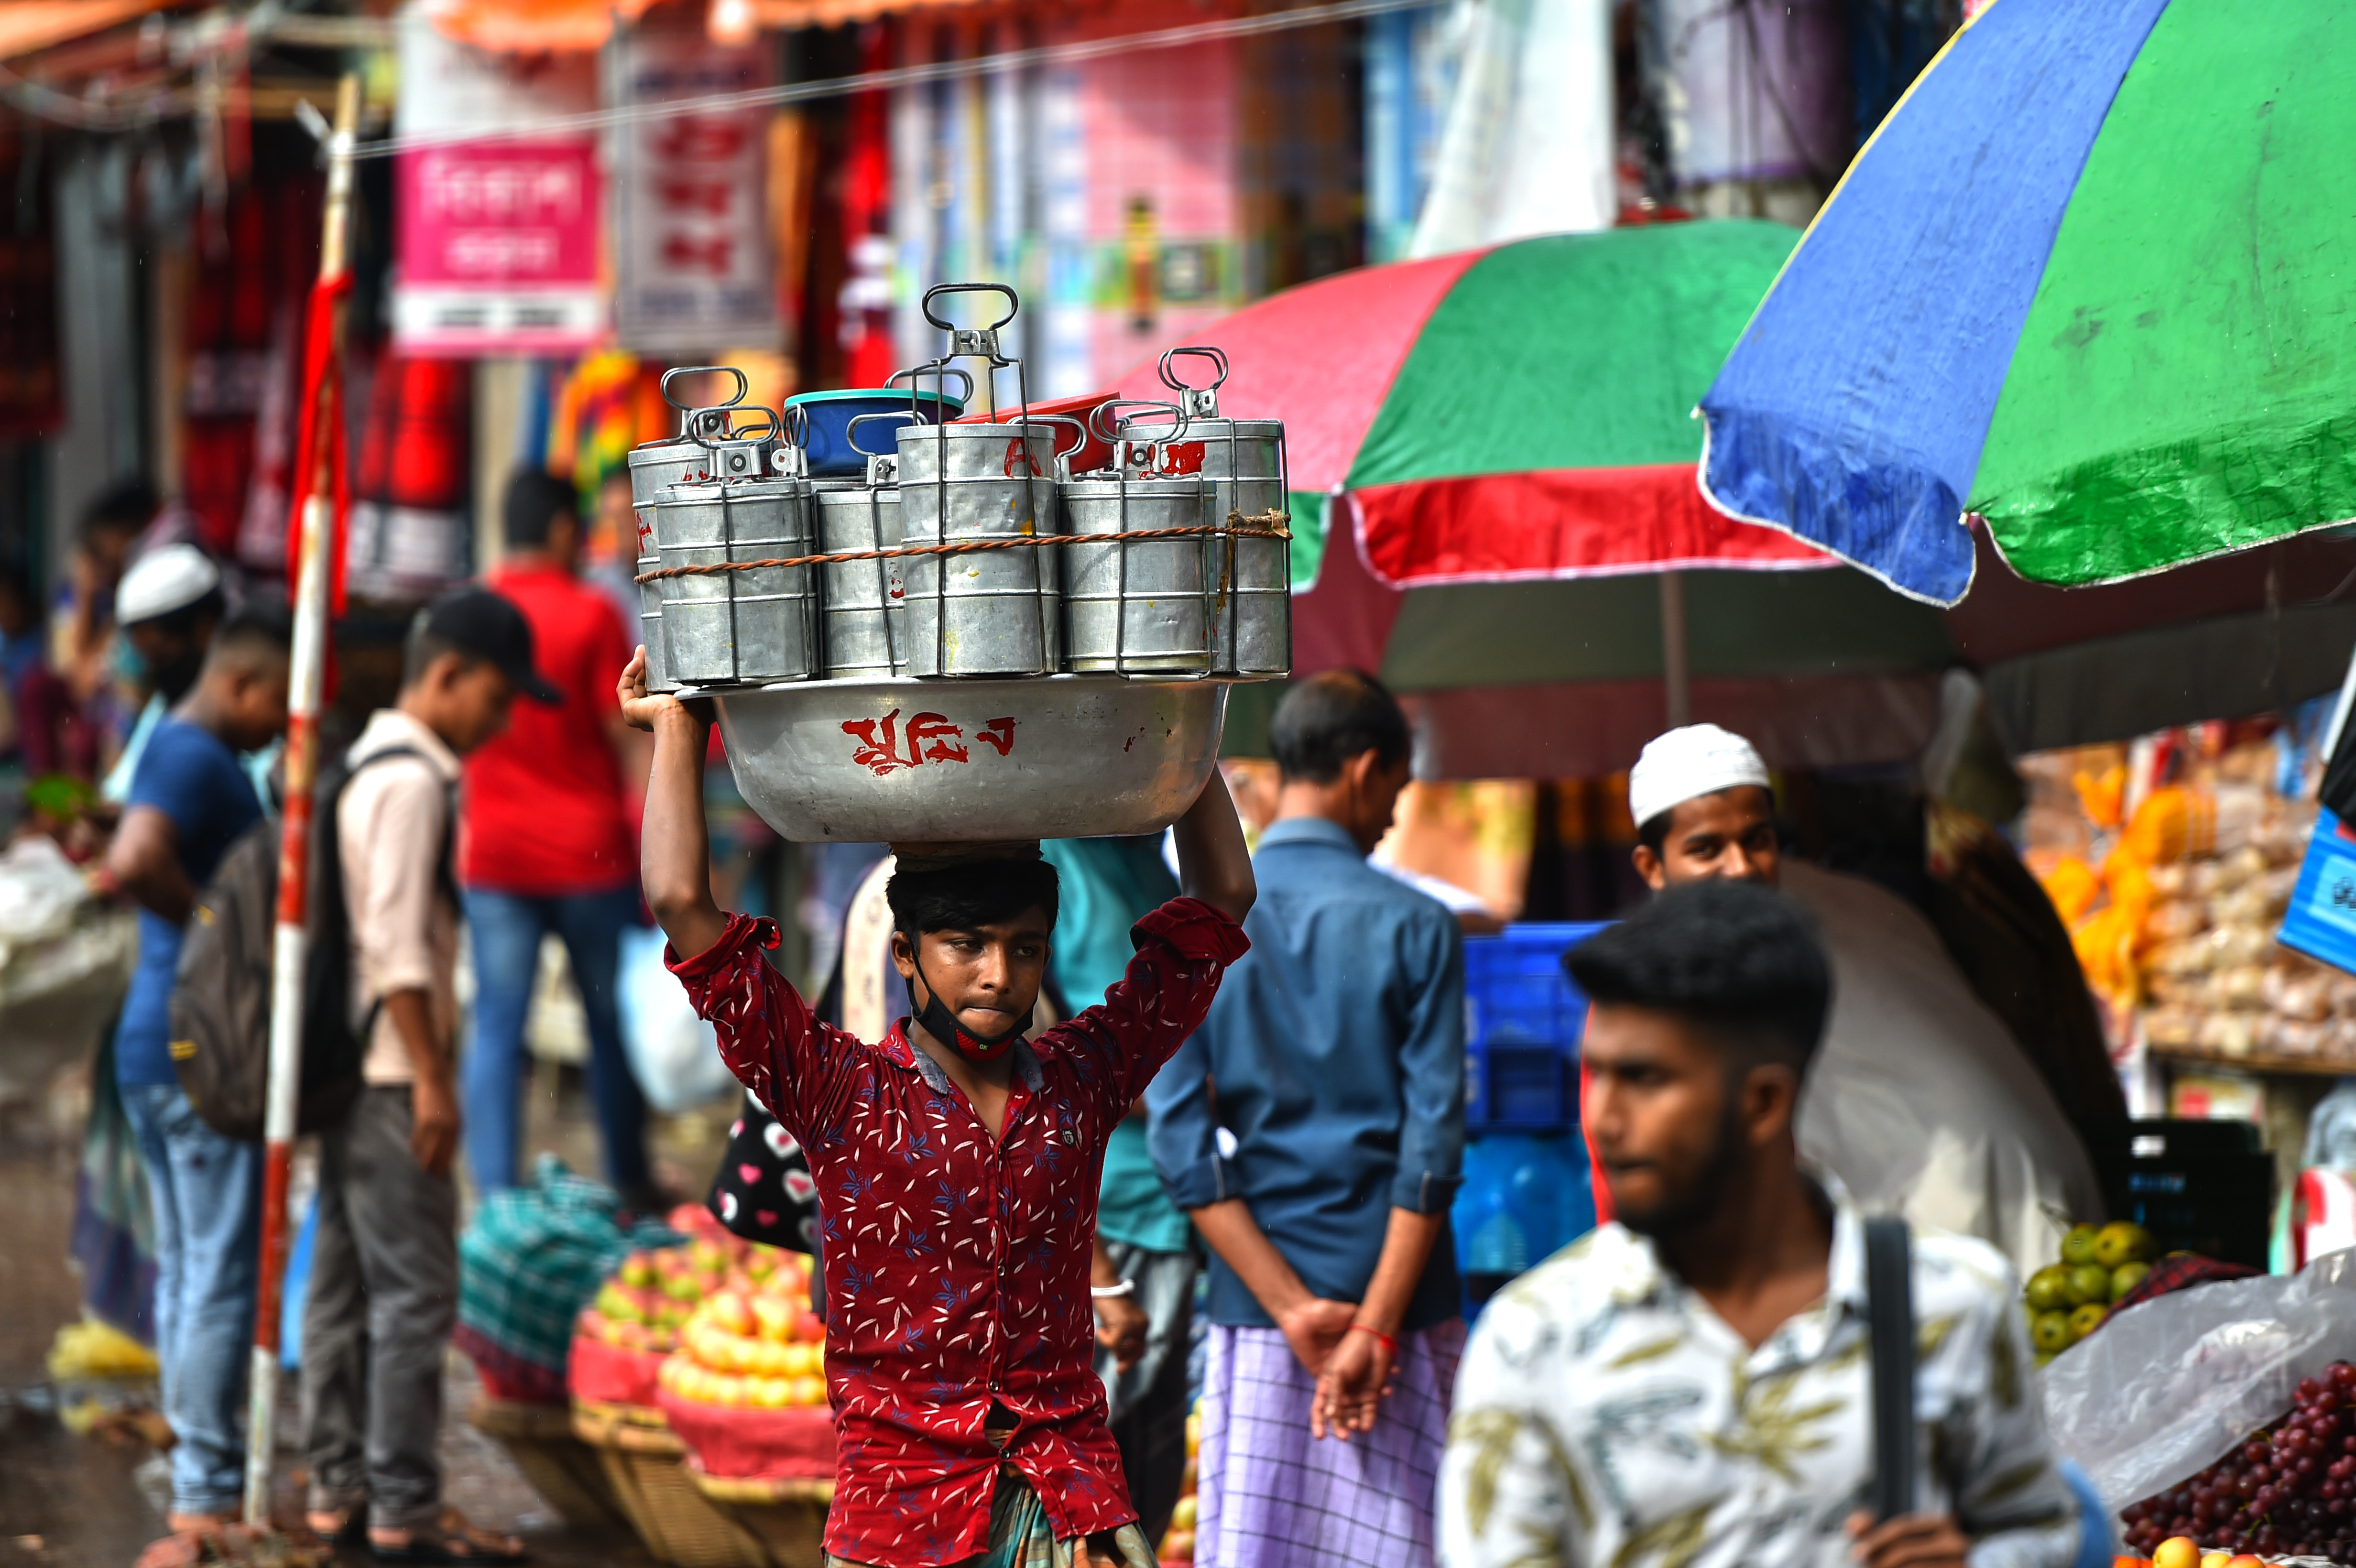 在孟加拉國首都達卡流行着一種名為「達巴瓦拉」的送餐服務，這種服務有悠久的歷史。「達巴瓦拉」，這個源自波斯語的詞語，意思是「送飯盒的人」。在達卡，很多居家妻子親手烹飪的盒飯，每天由「達巴瓦拉」傳遞到為生活打拼的丈夫手中。在訂餐軟件日益發達的今天，這類送餐服務在當地仍然受到歡迎。圖為10月8日，在孟加拉國首都達卡，「達巴瓦拉」頭頂托盤運送飯盒。（新華社）